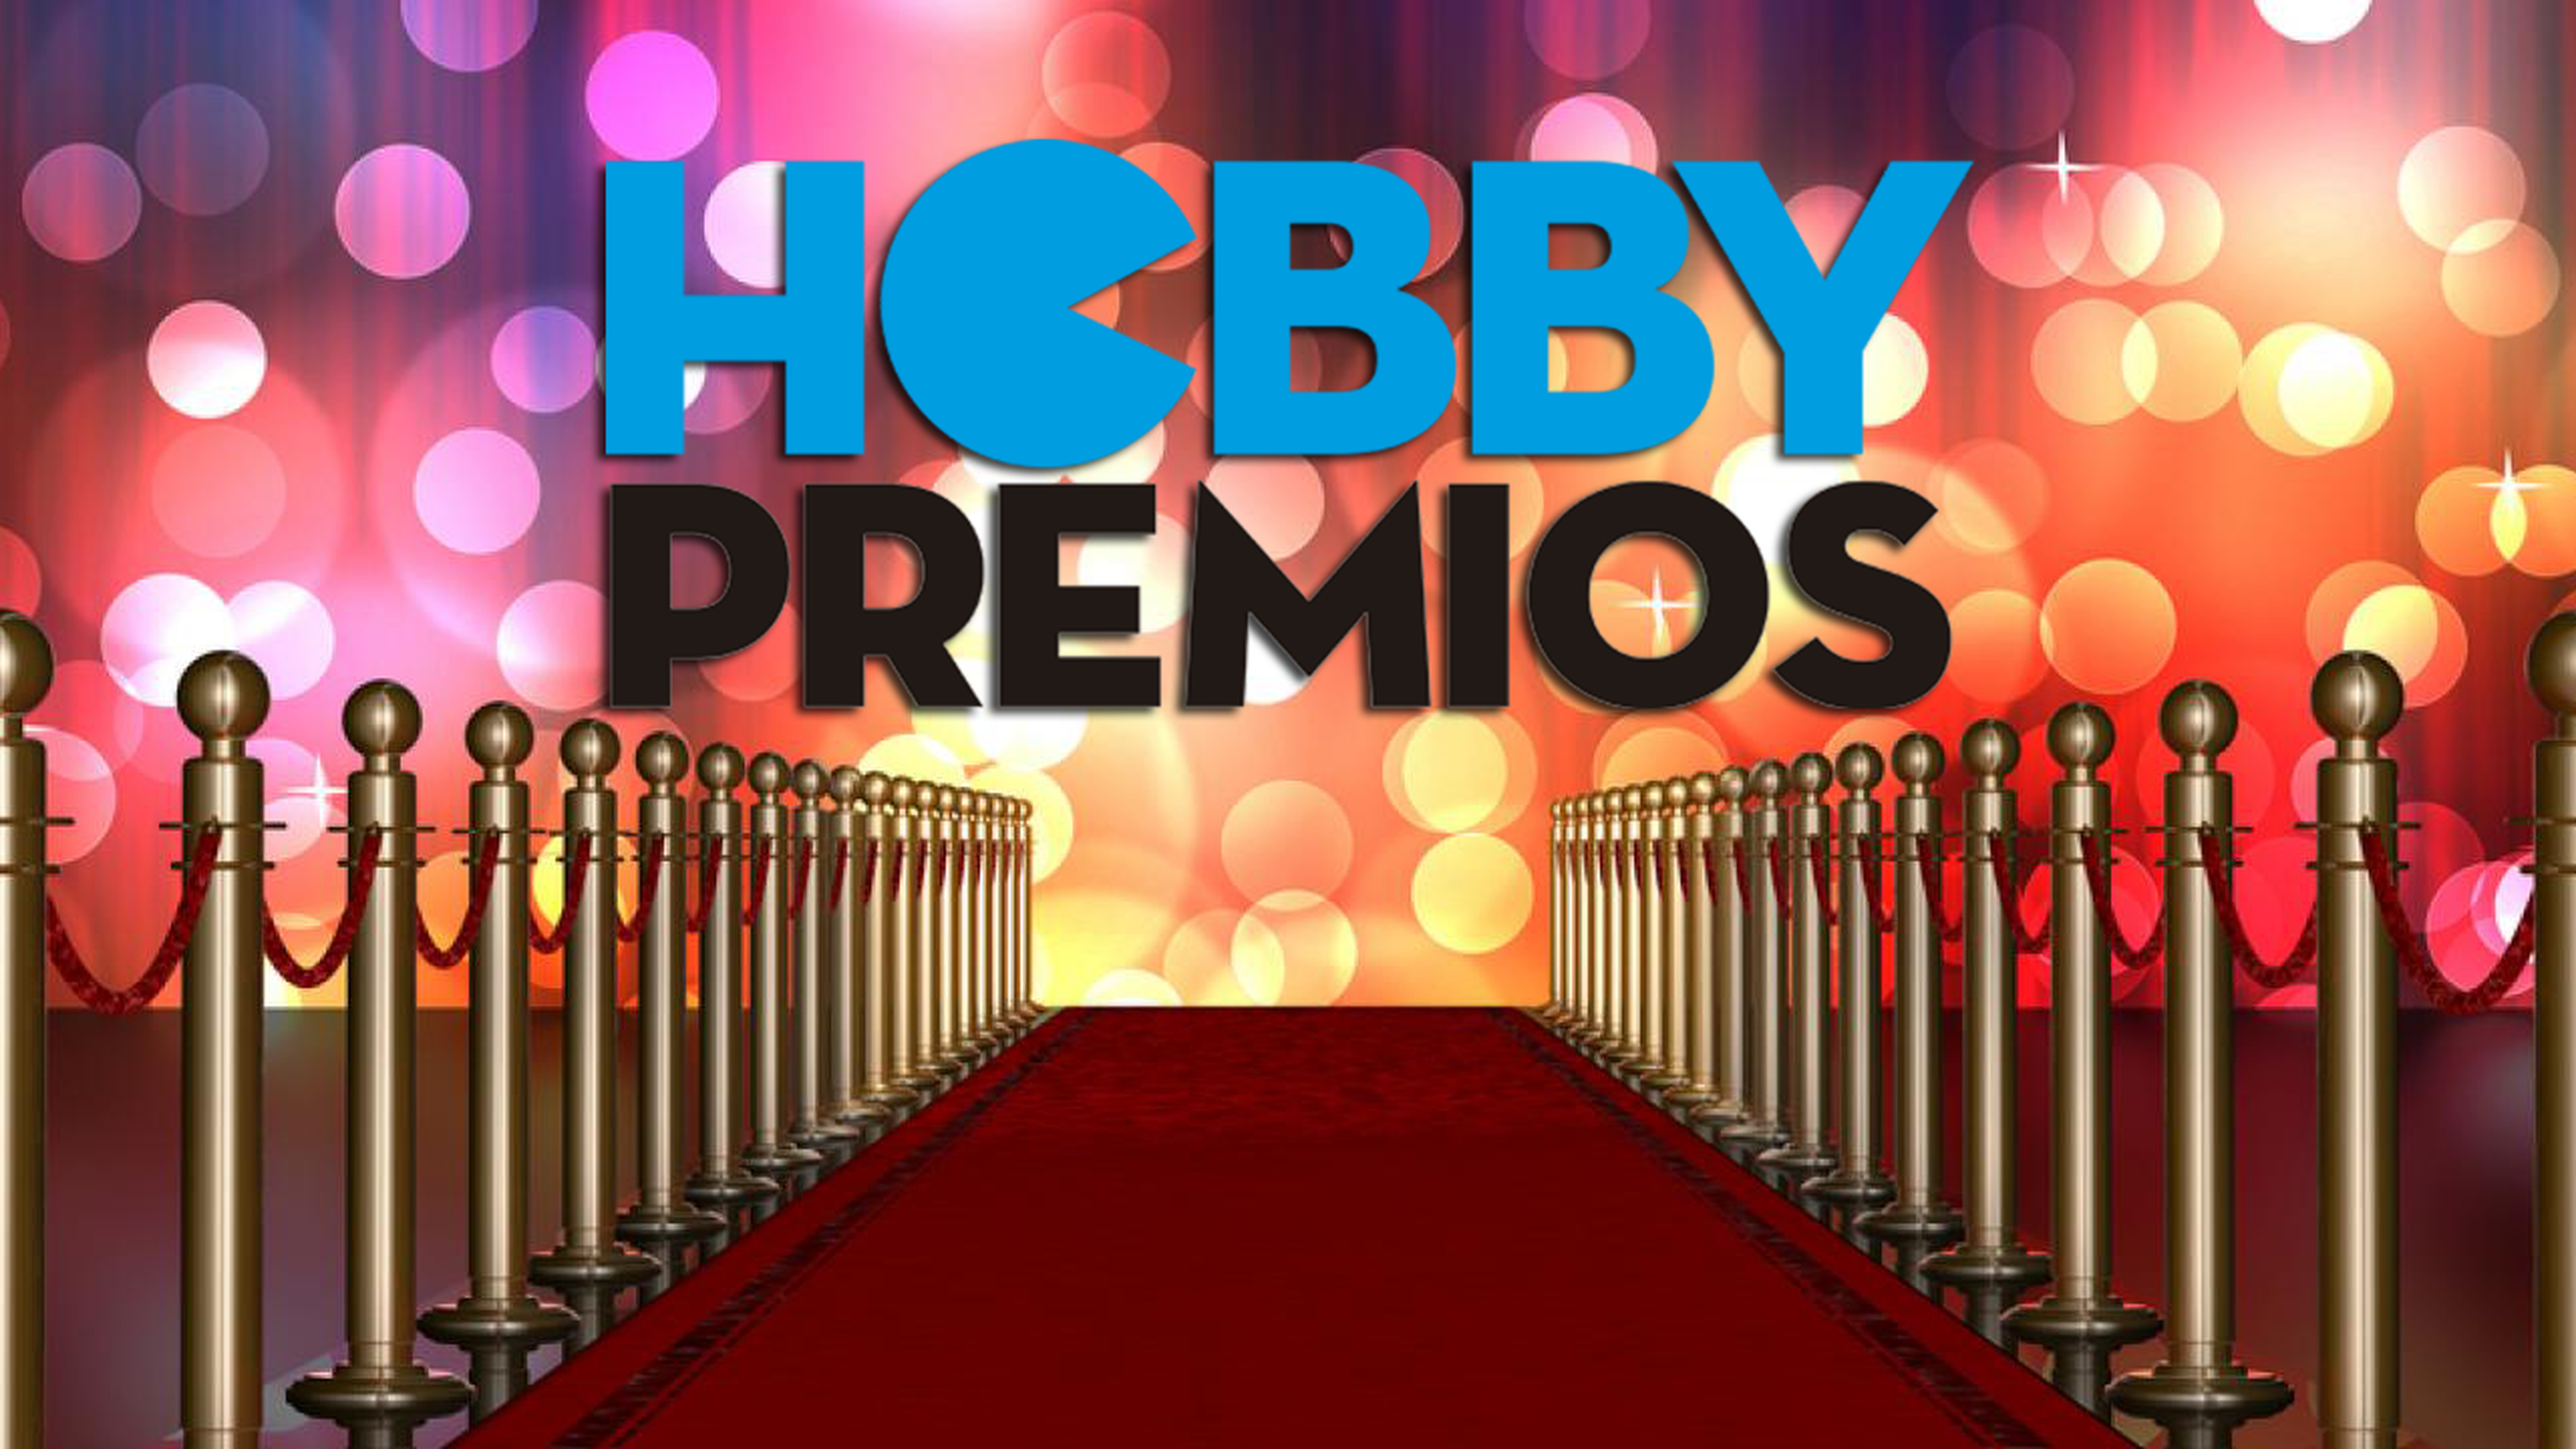 Hobby Premios 2016 en directo